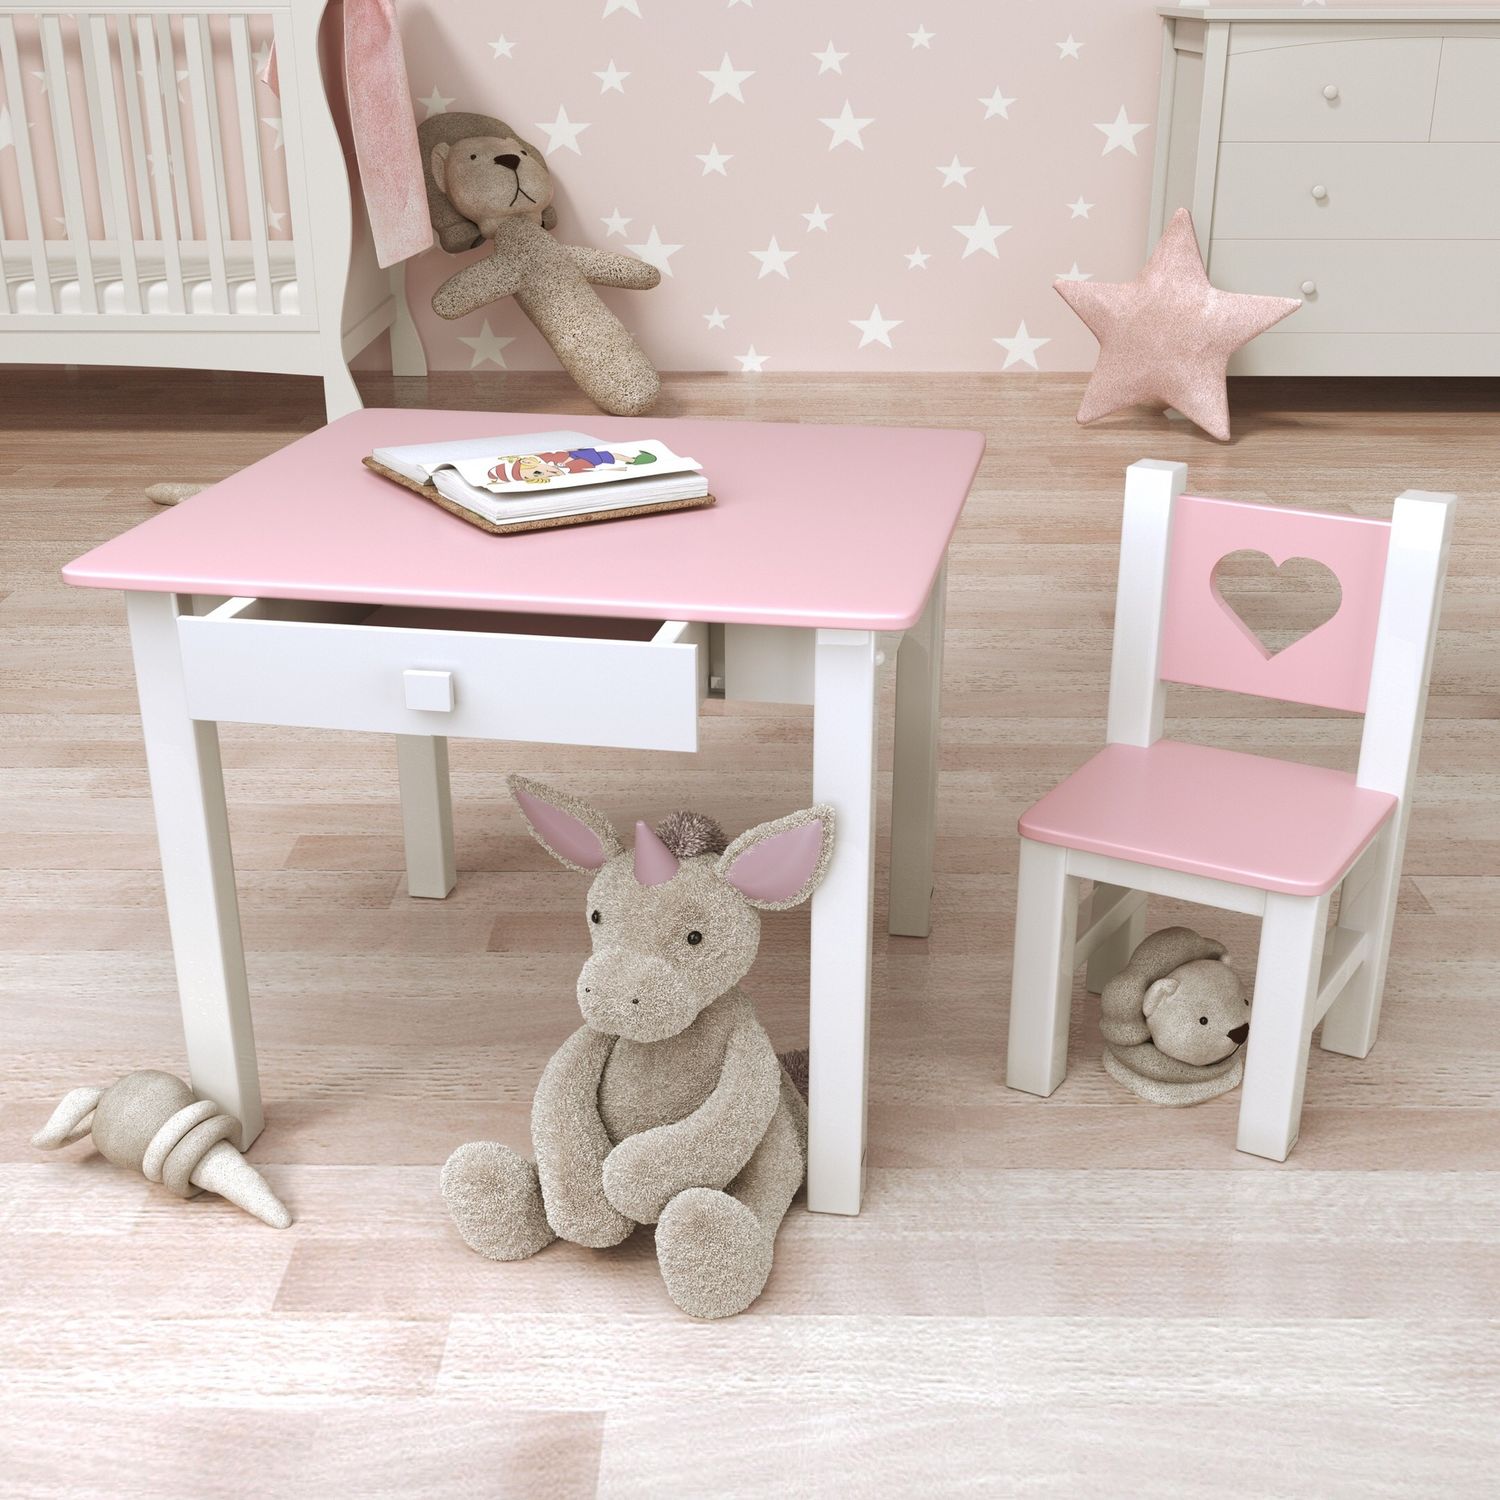 Детский столик с полочками и стульчик